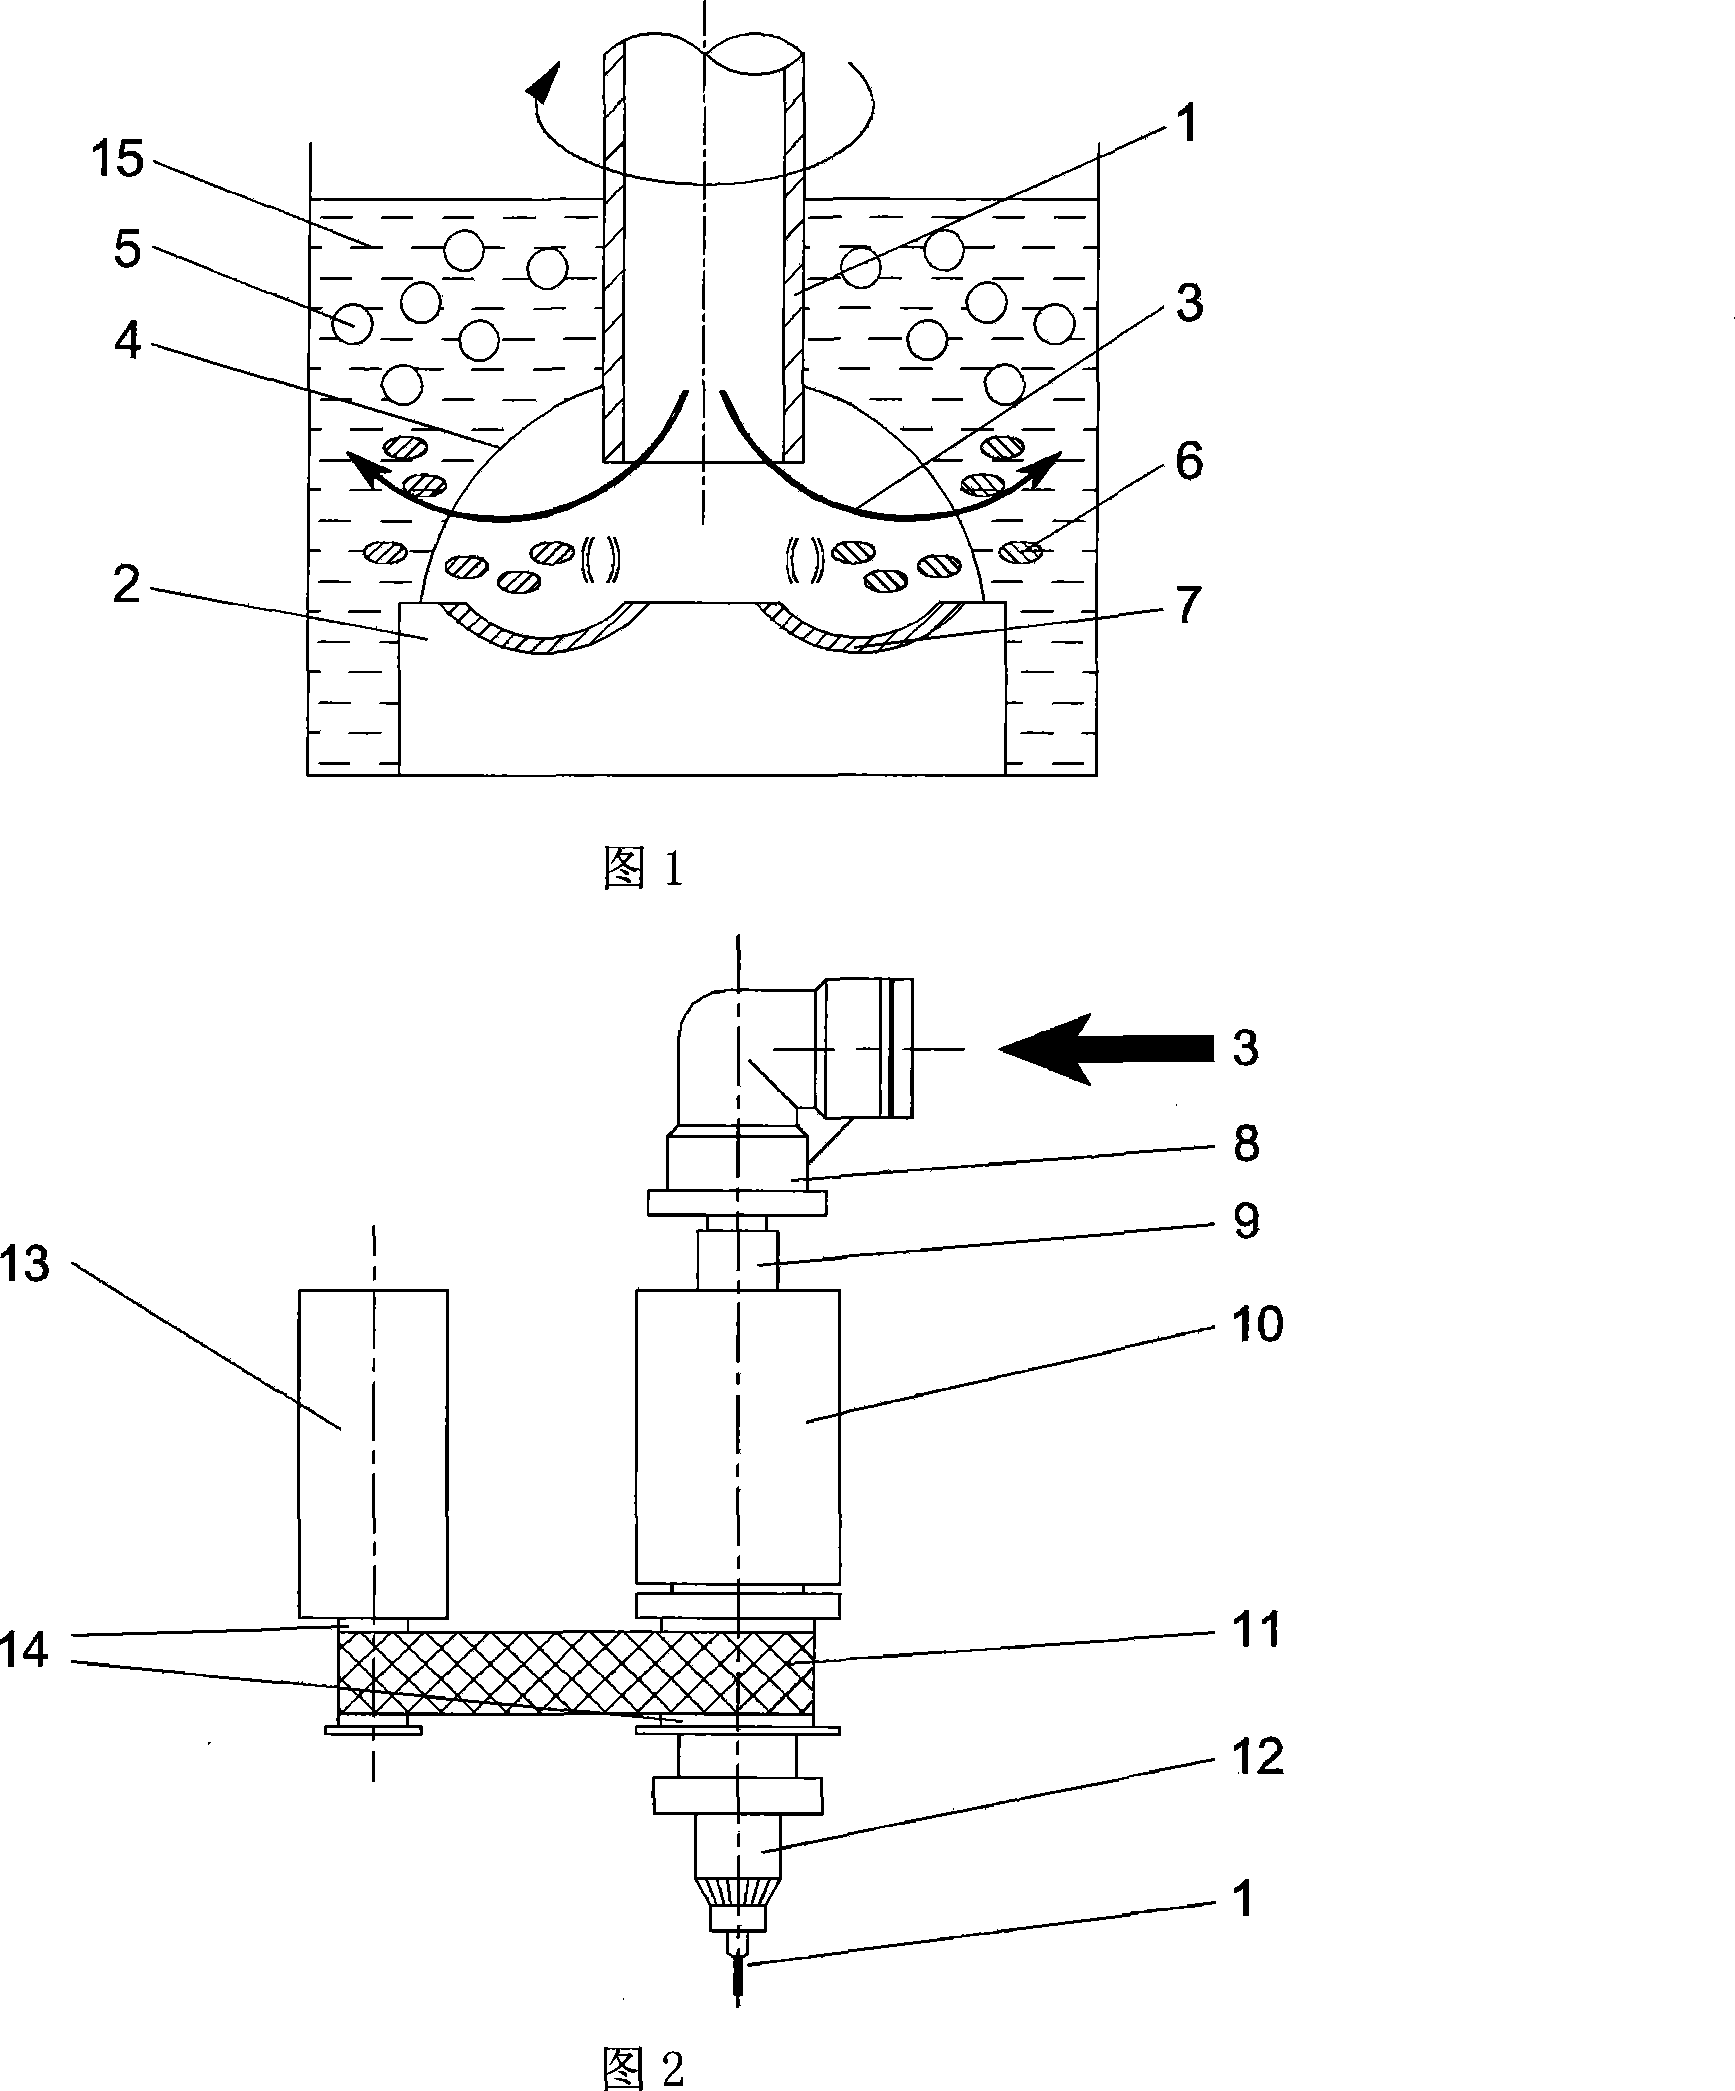 Air blast electric spark processing method in liquid